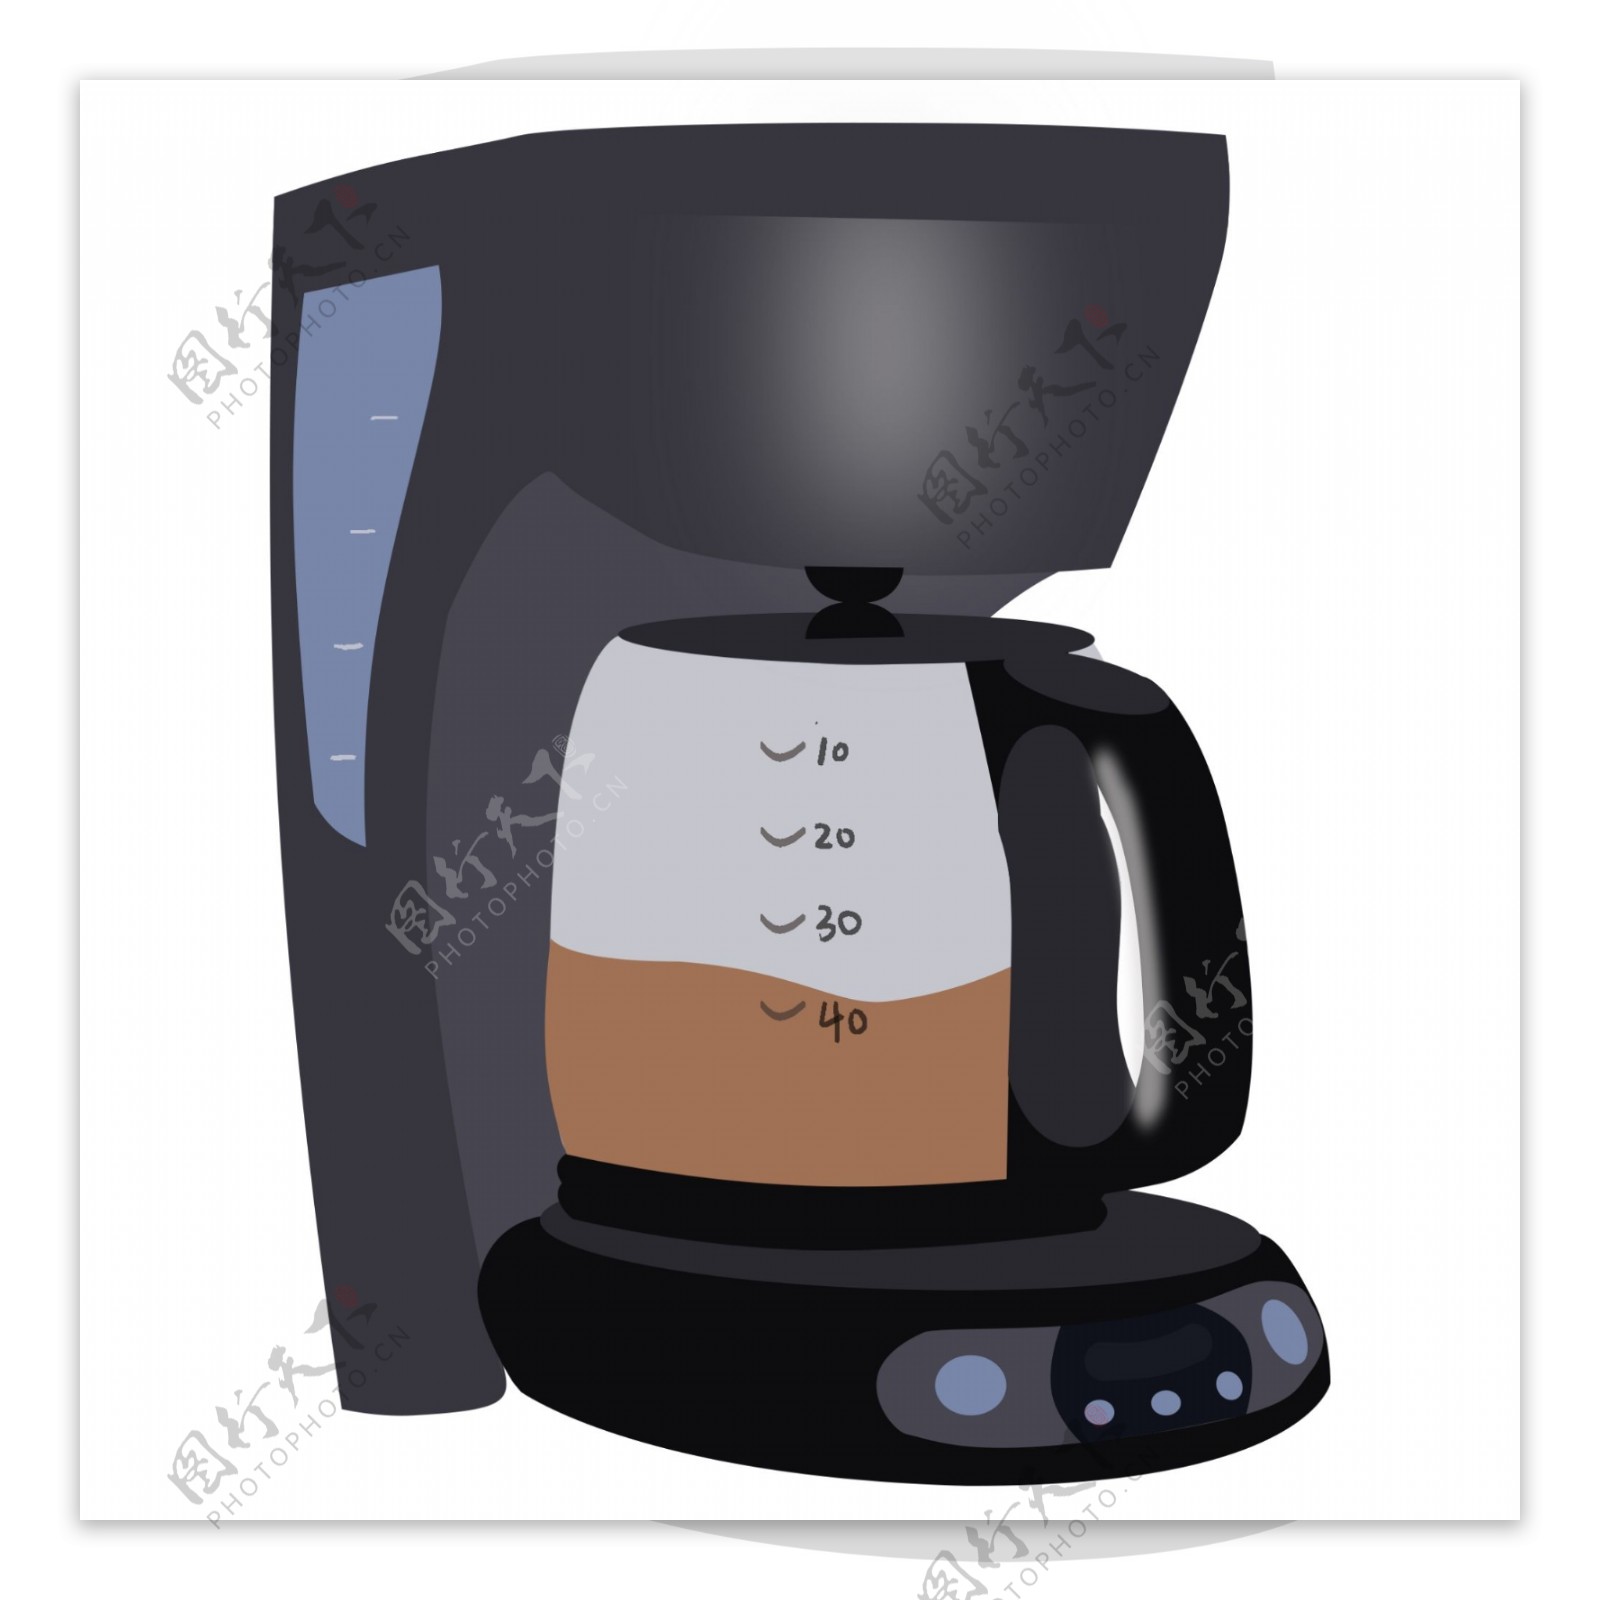 黑色办公室咖啡机插图